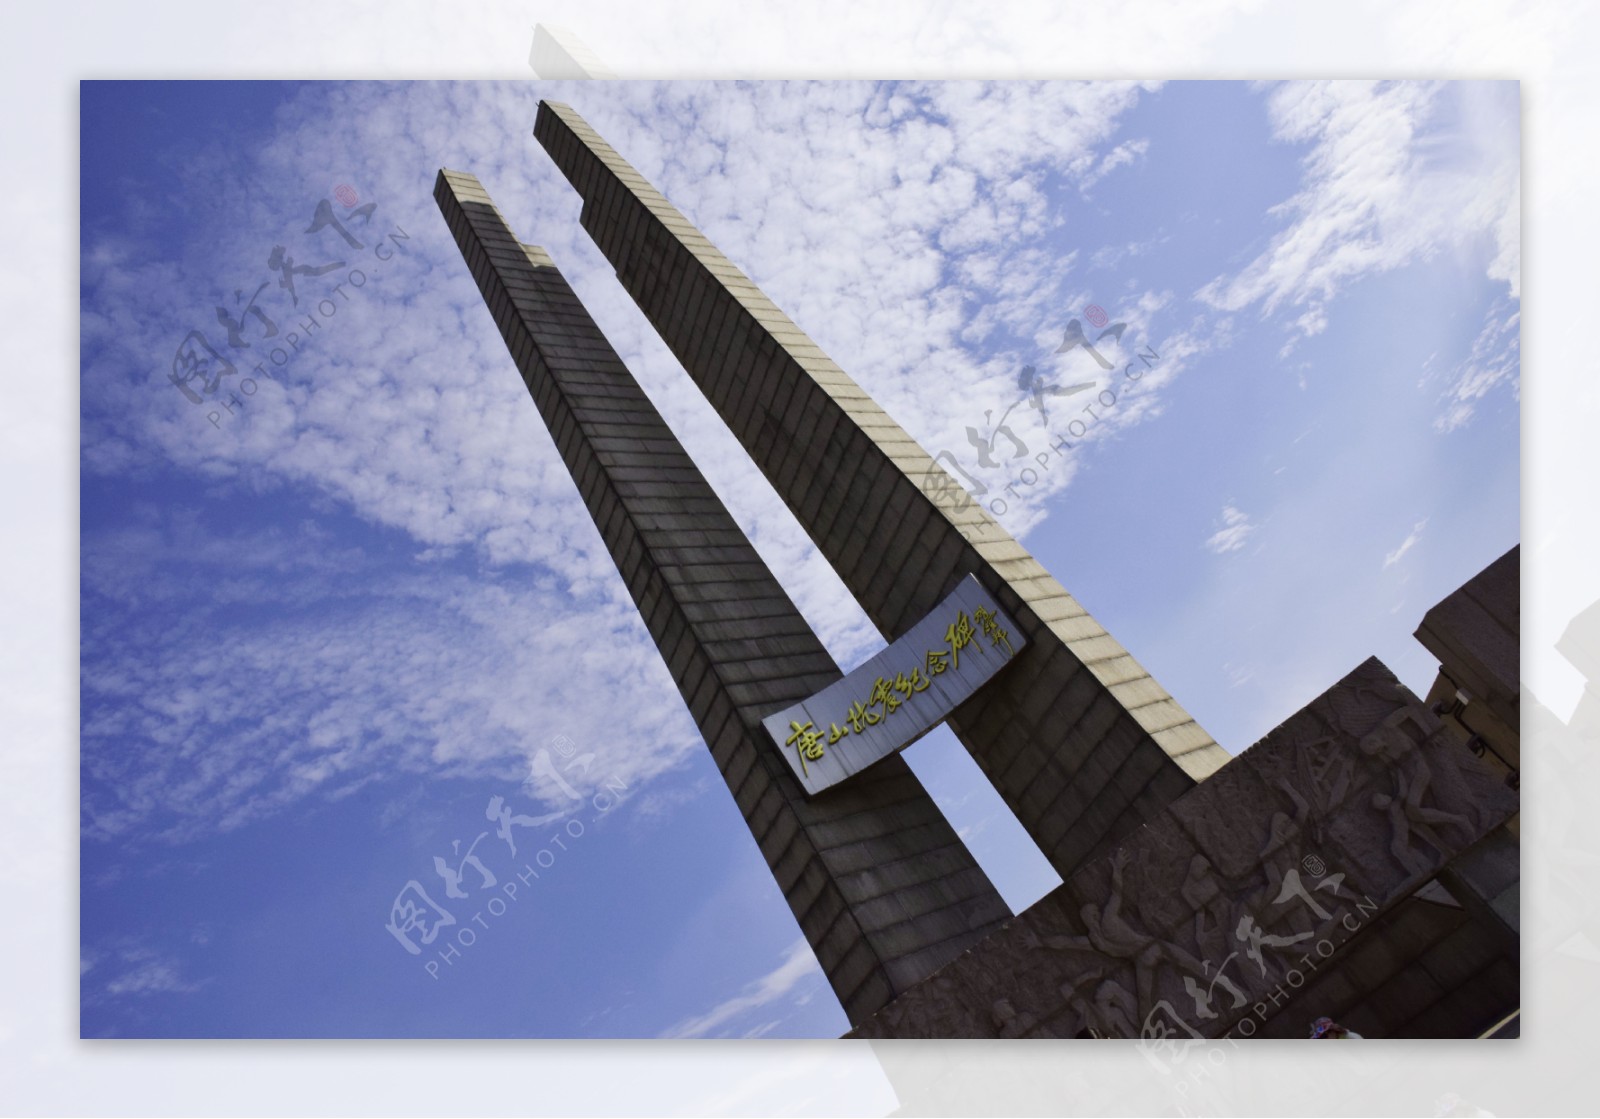 唐山抗震纪念碑